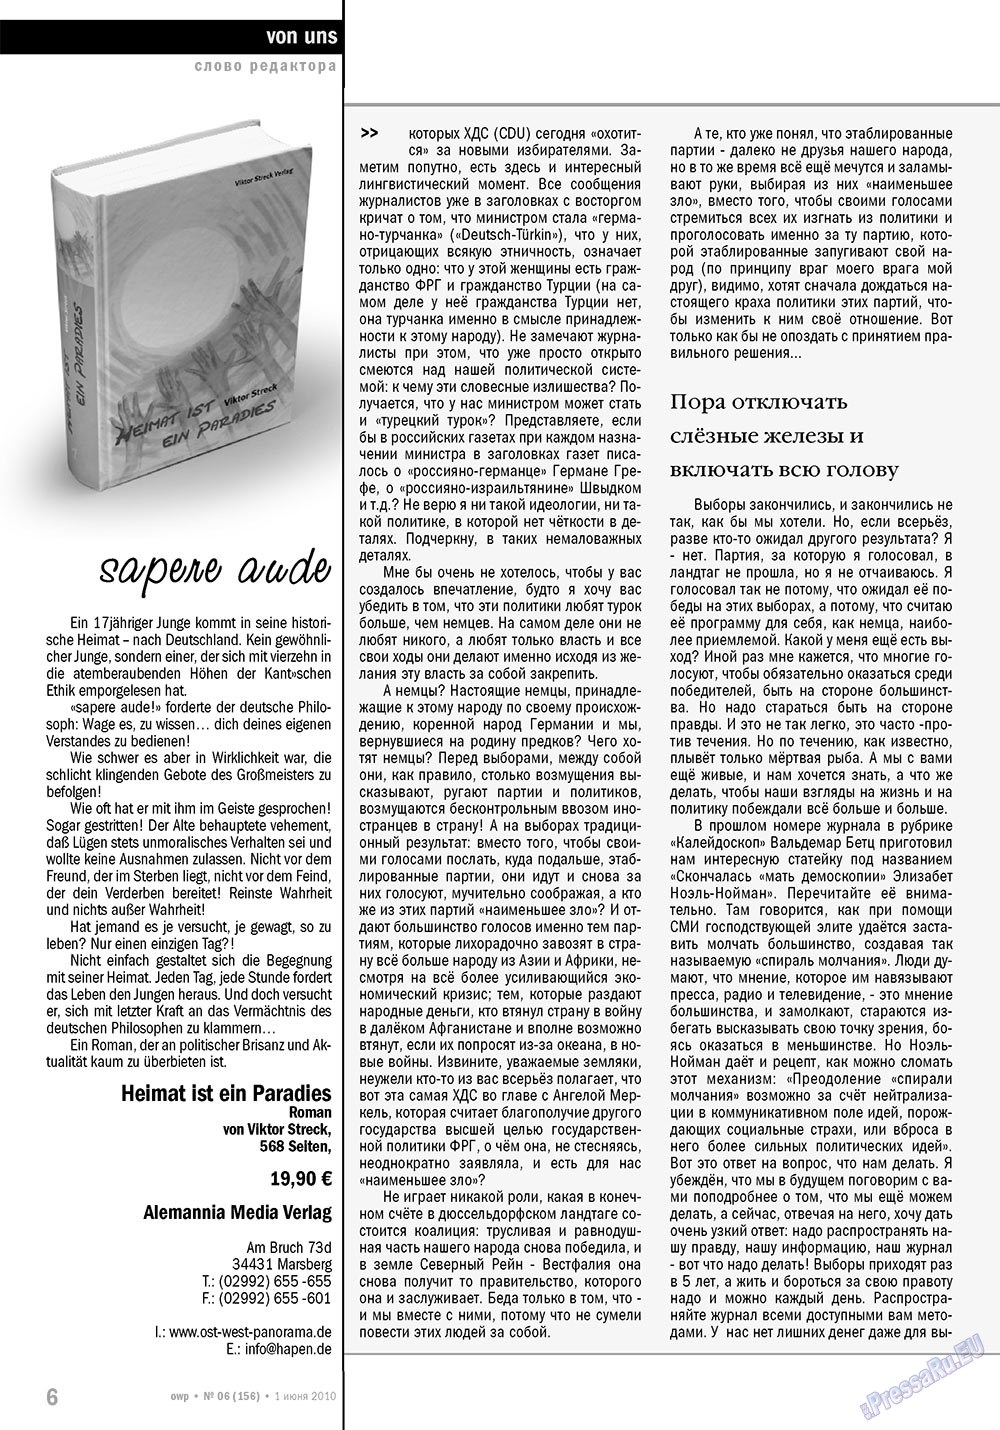 Ost-West Panorama (журнал). 2010 год, номер 6, стр. 6